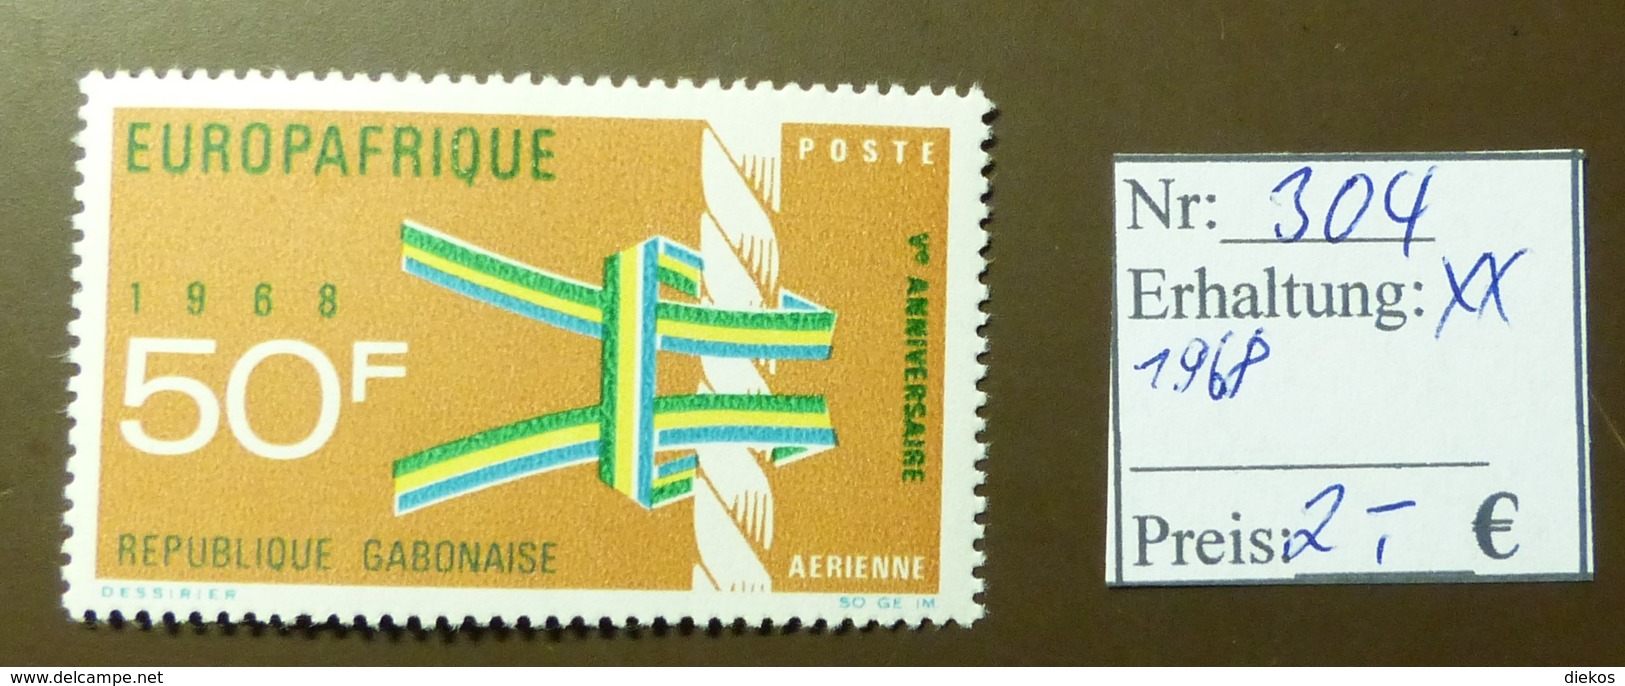 Gabunaise  Europafrique Europa  MiNr: 304  Postfrisch ** MNH     #4908 - Gabun (1960-...)